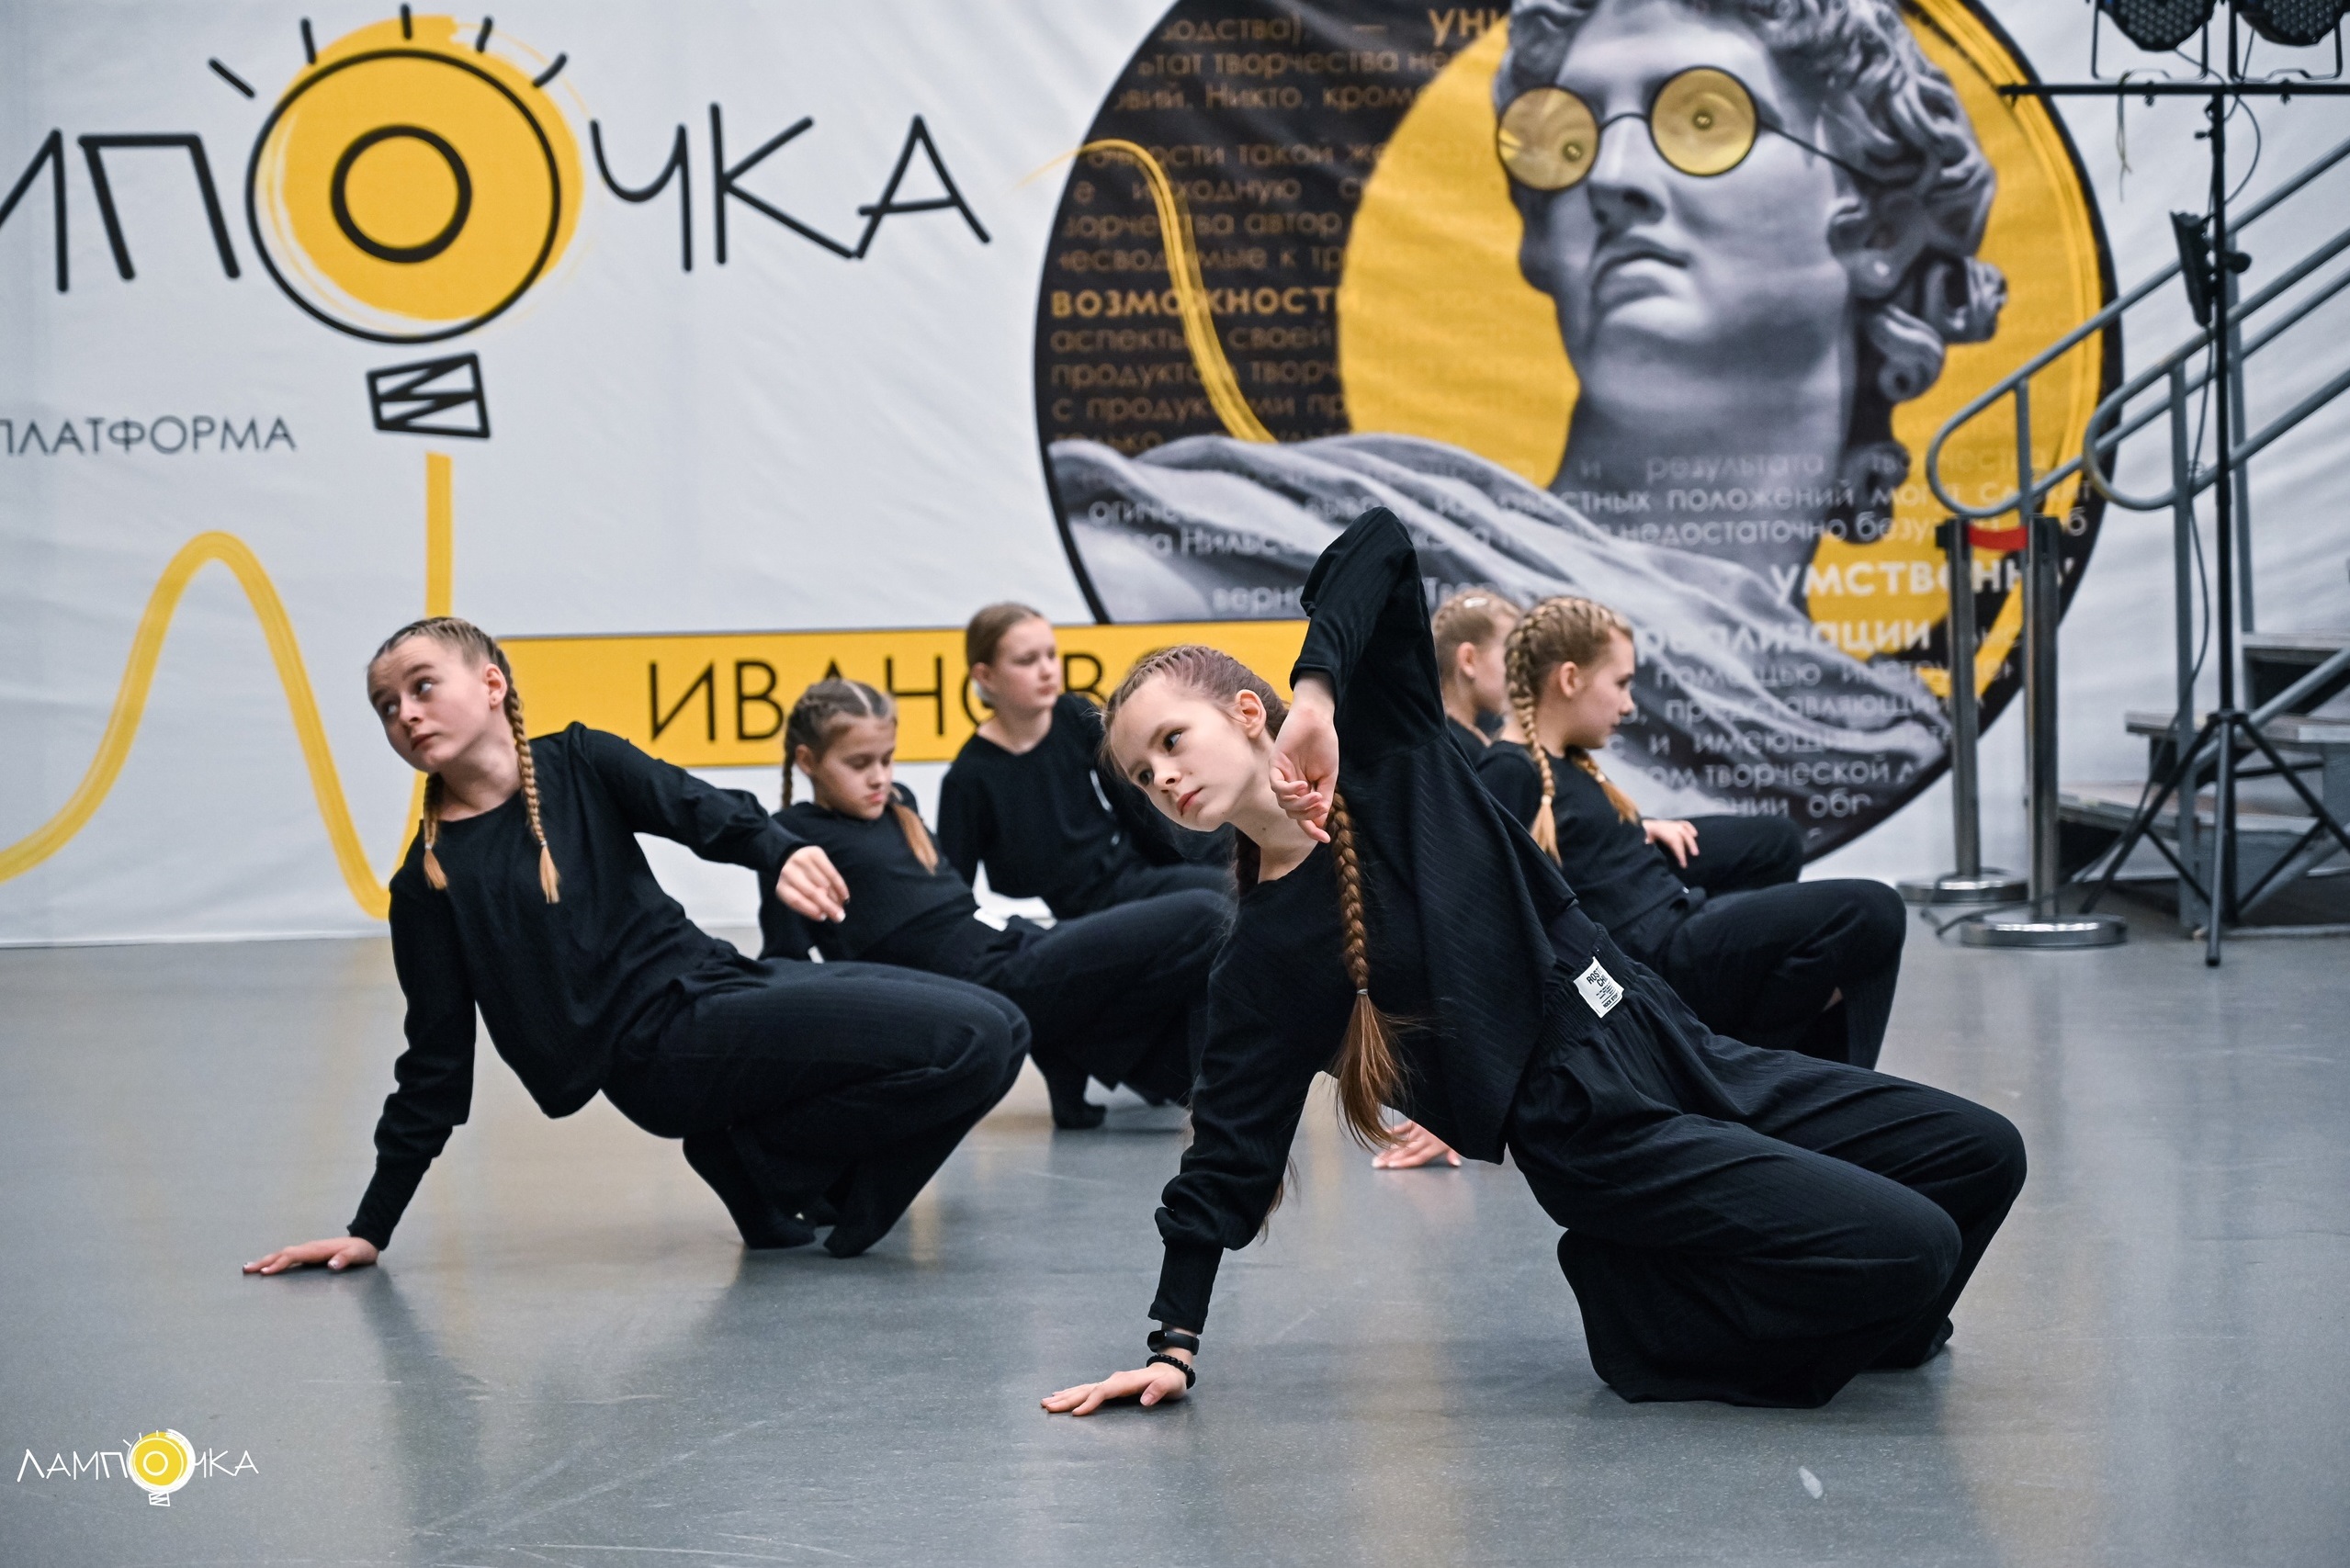 Началась работа творческой молодежной платформы «Лампочка» по направлению хореография.